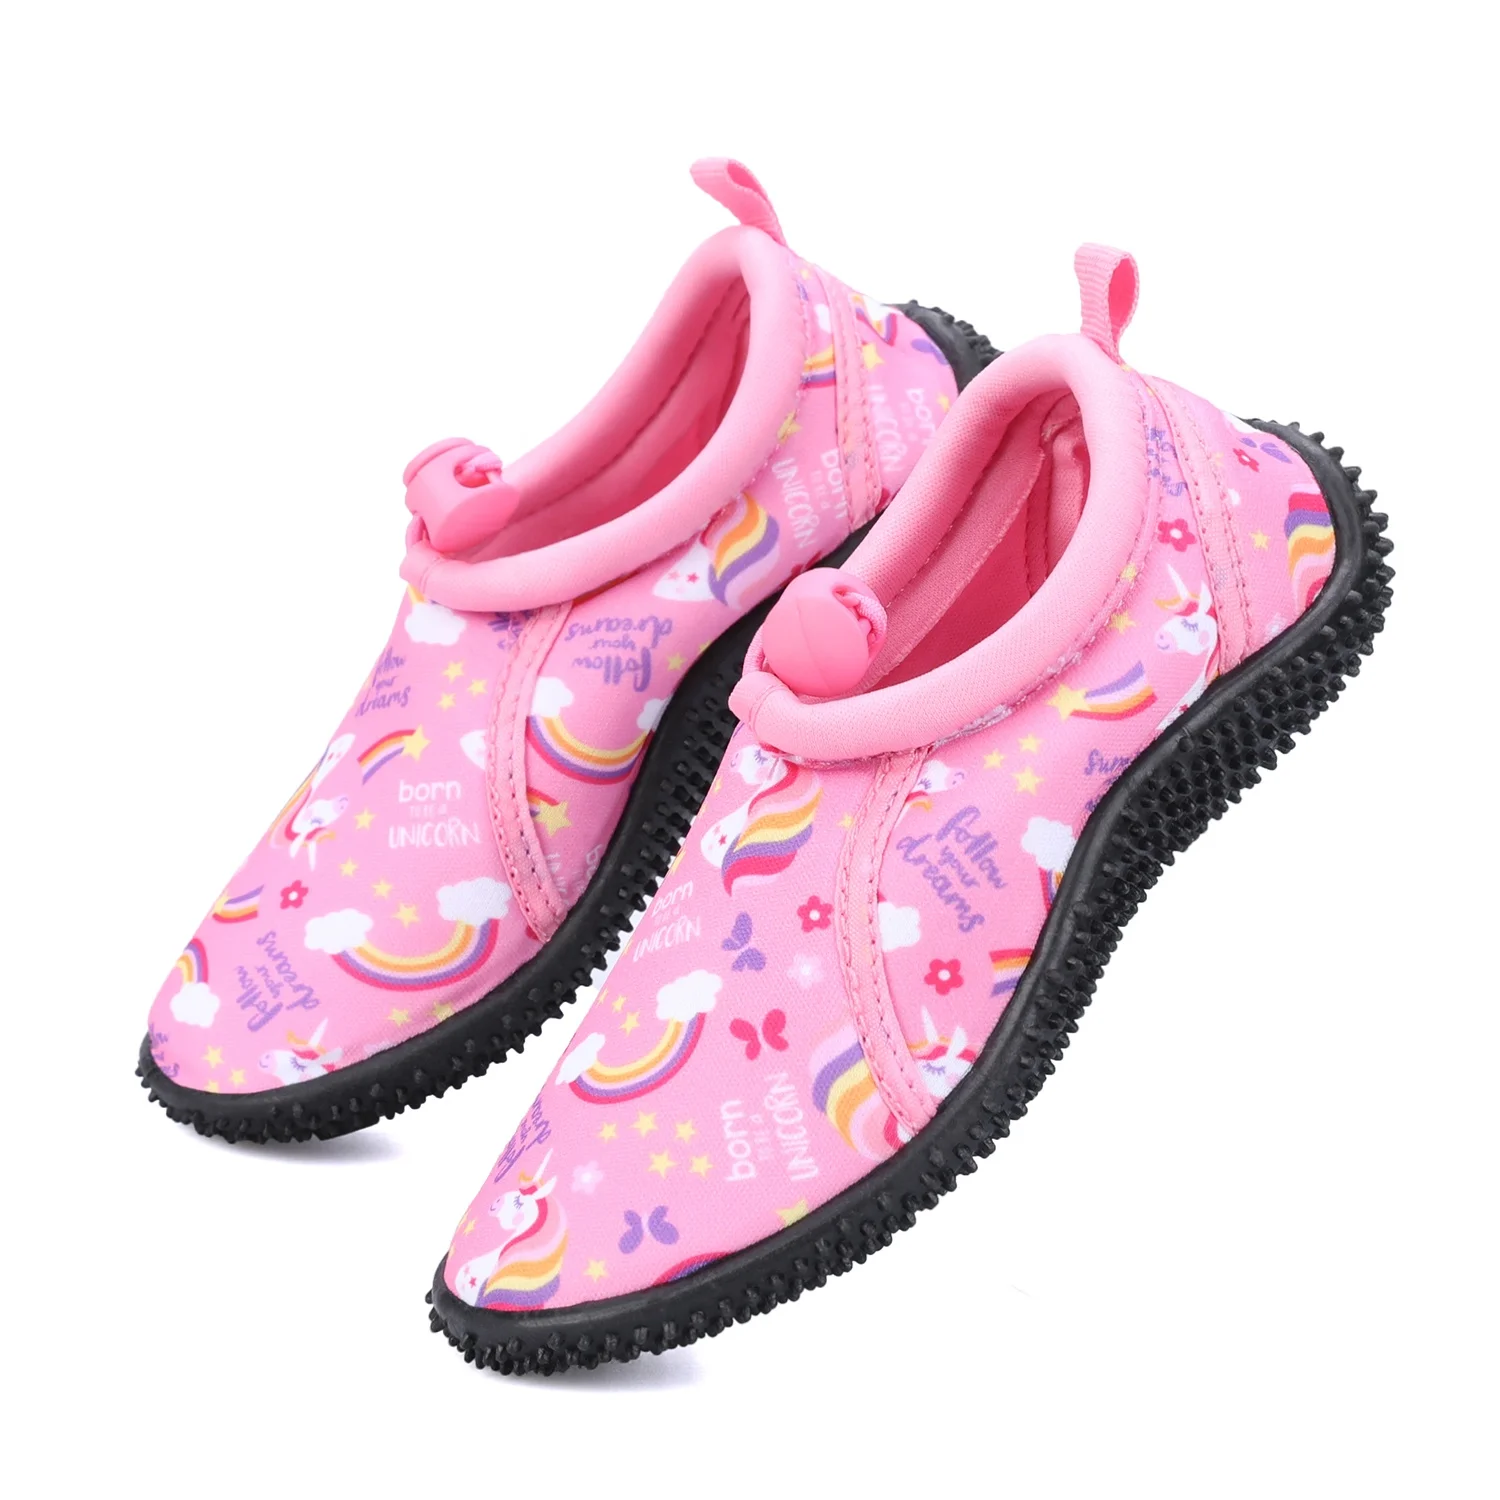 GHdfsad Chaussures pour Dames Chaussures de natation de sport Pour enfants Chaussures imperméables Chaussures de Sport Chaussures de plage Pour Hommes Chaussures Décontractées 